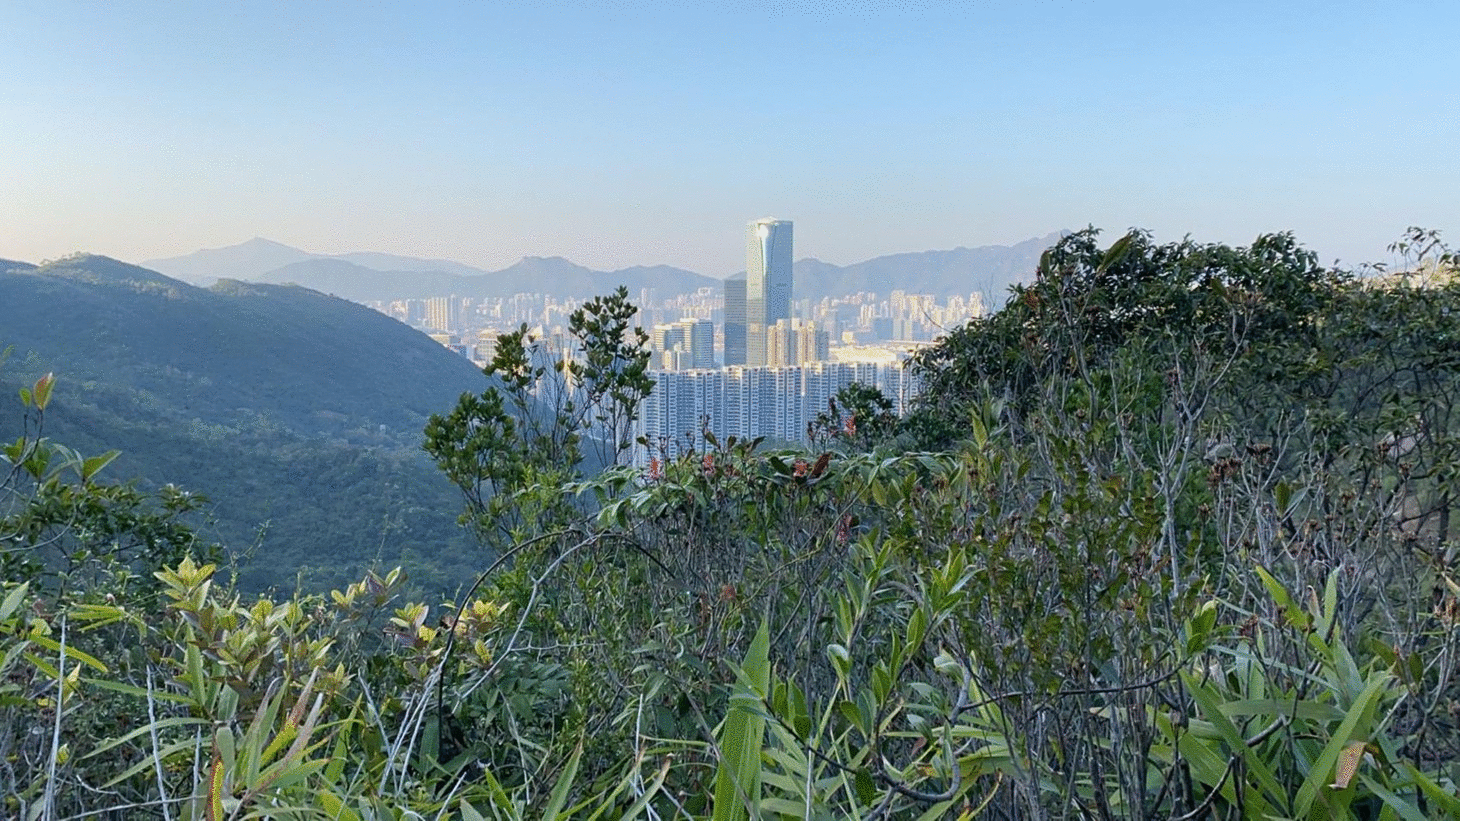 HK landscapes